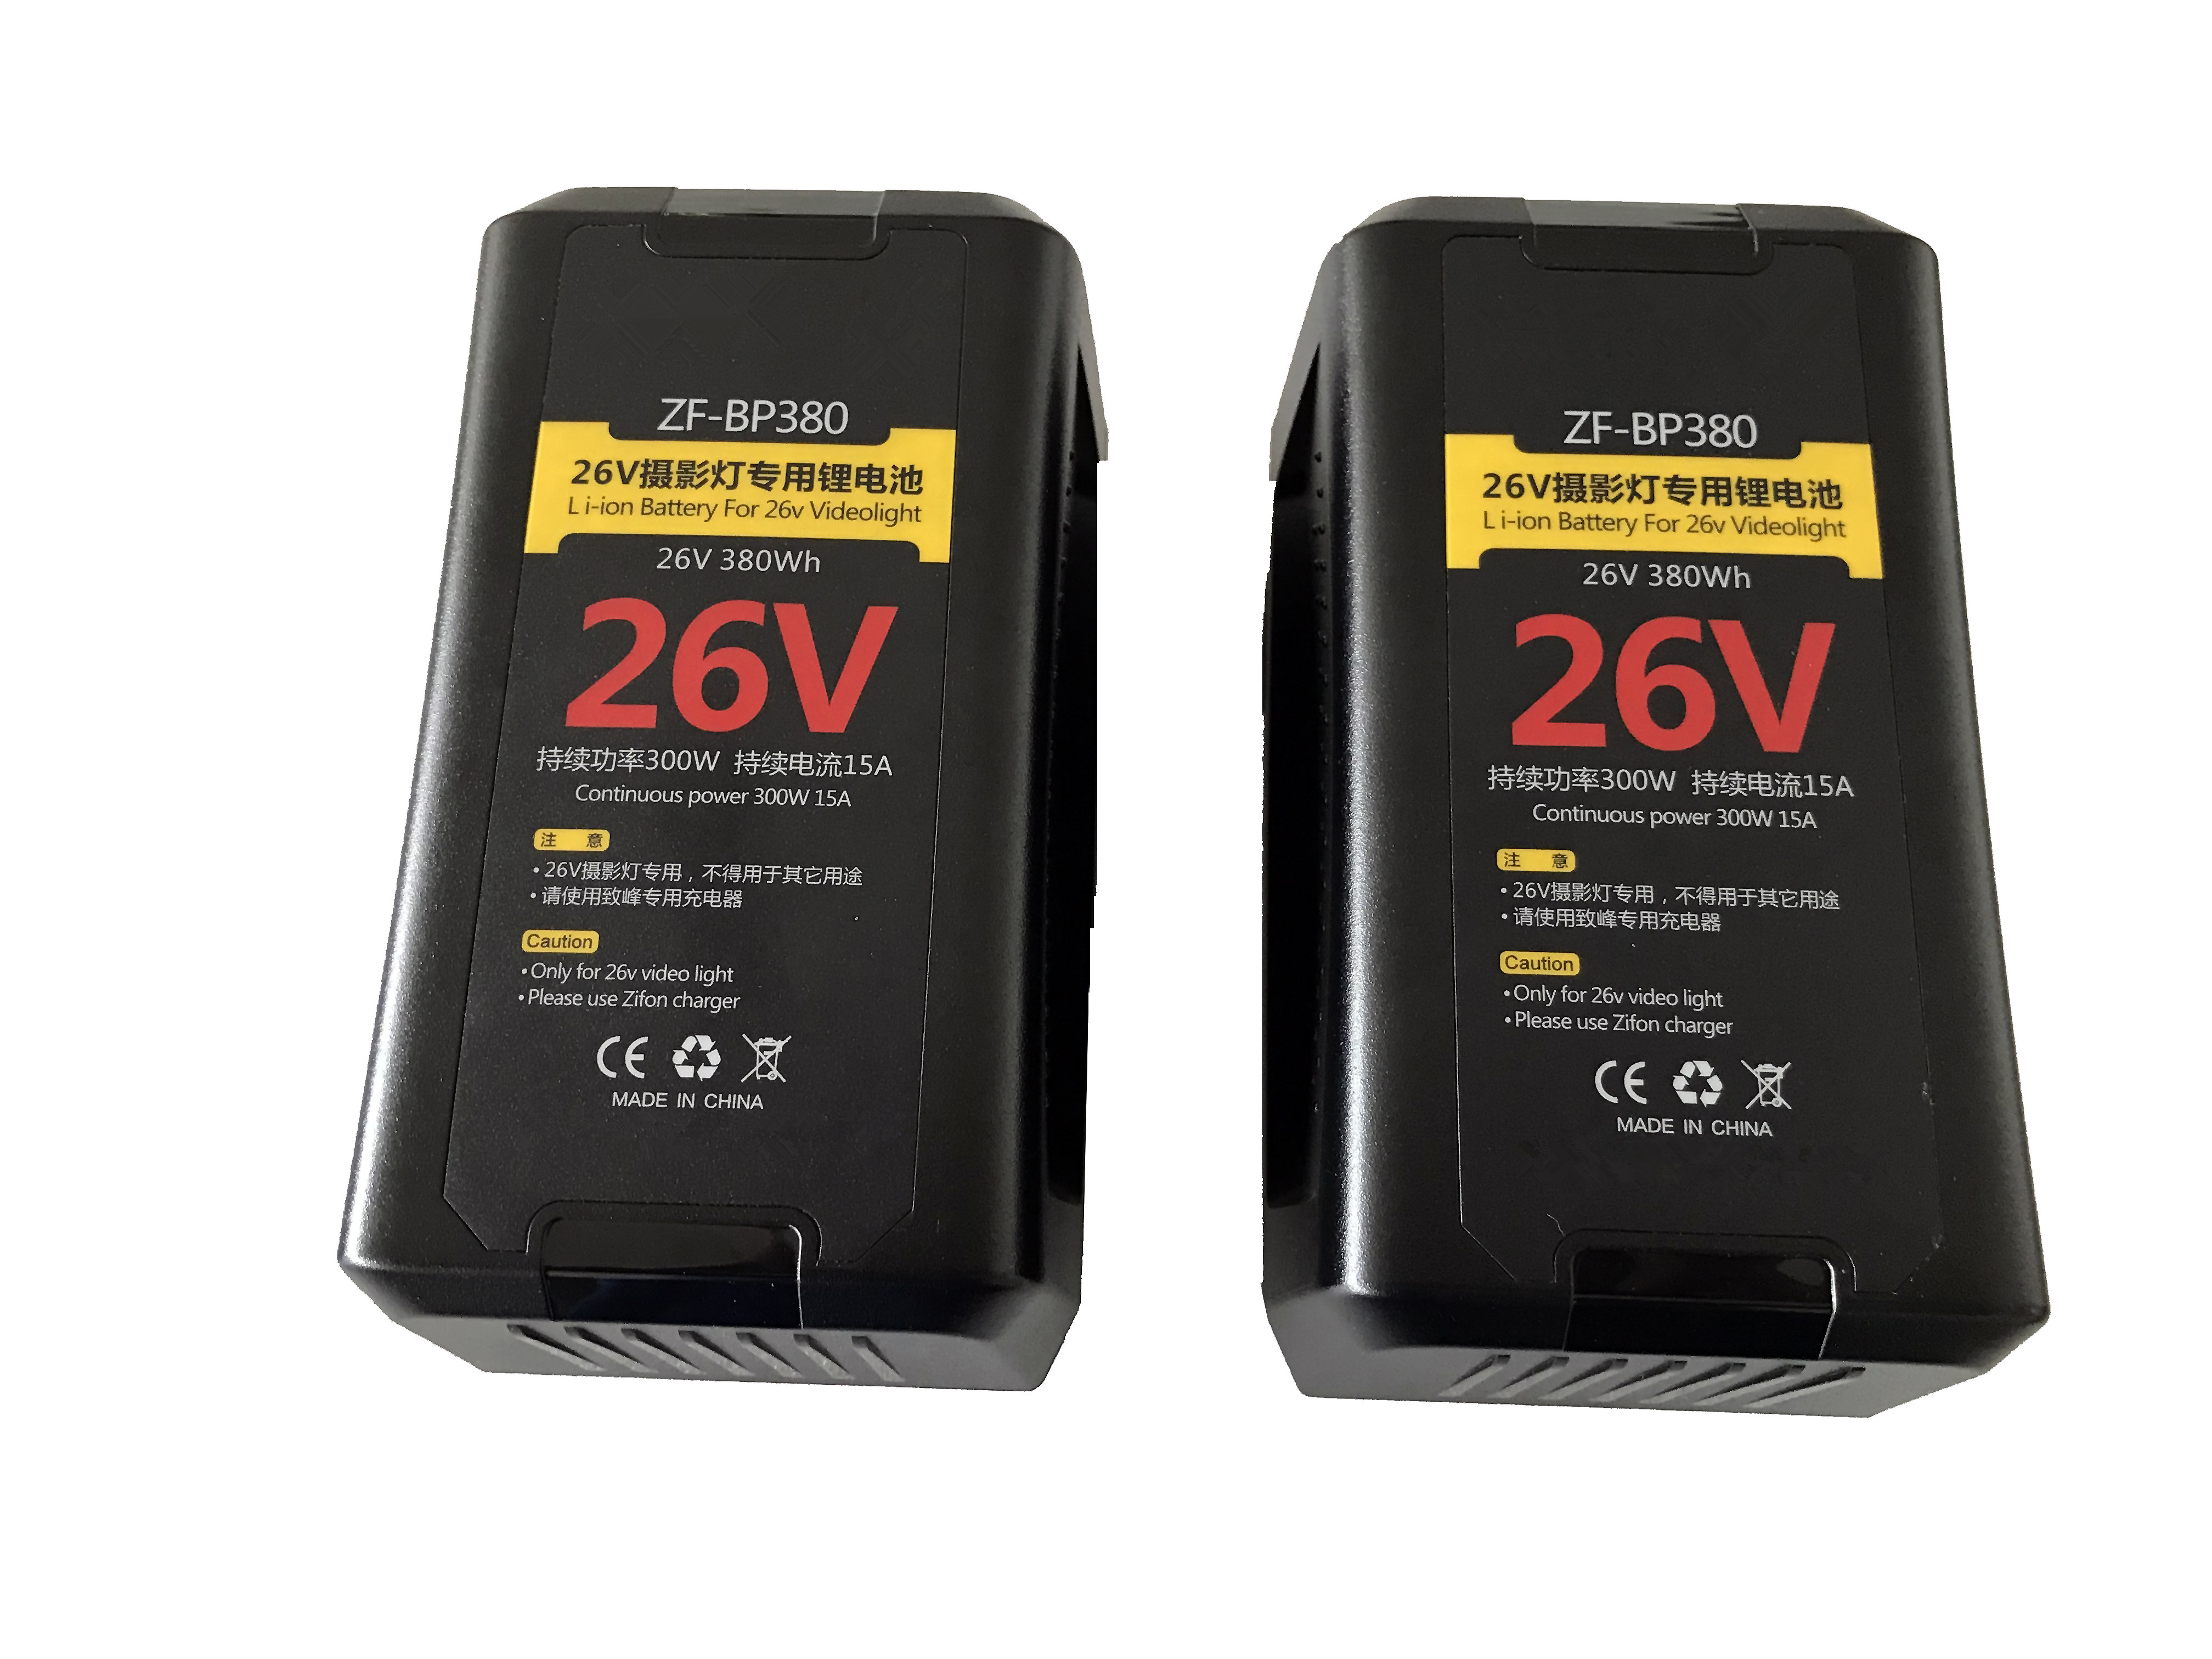 26v v-mount battery